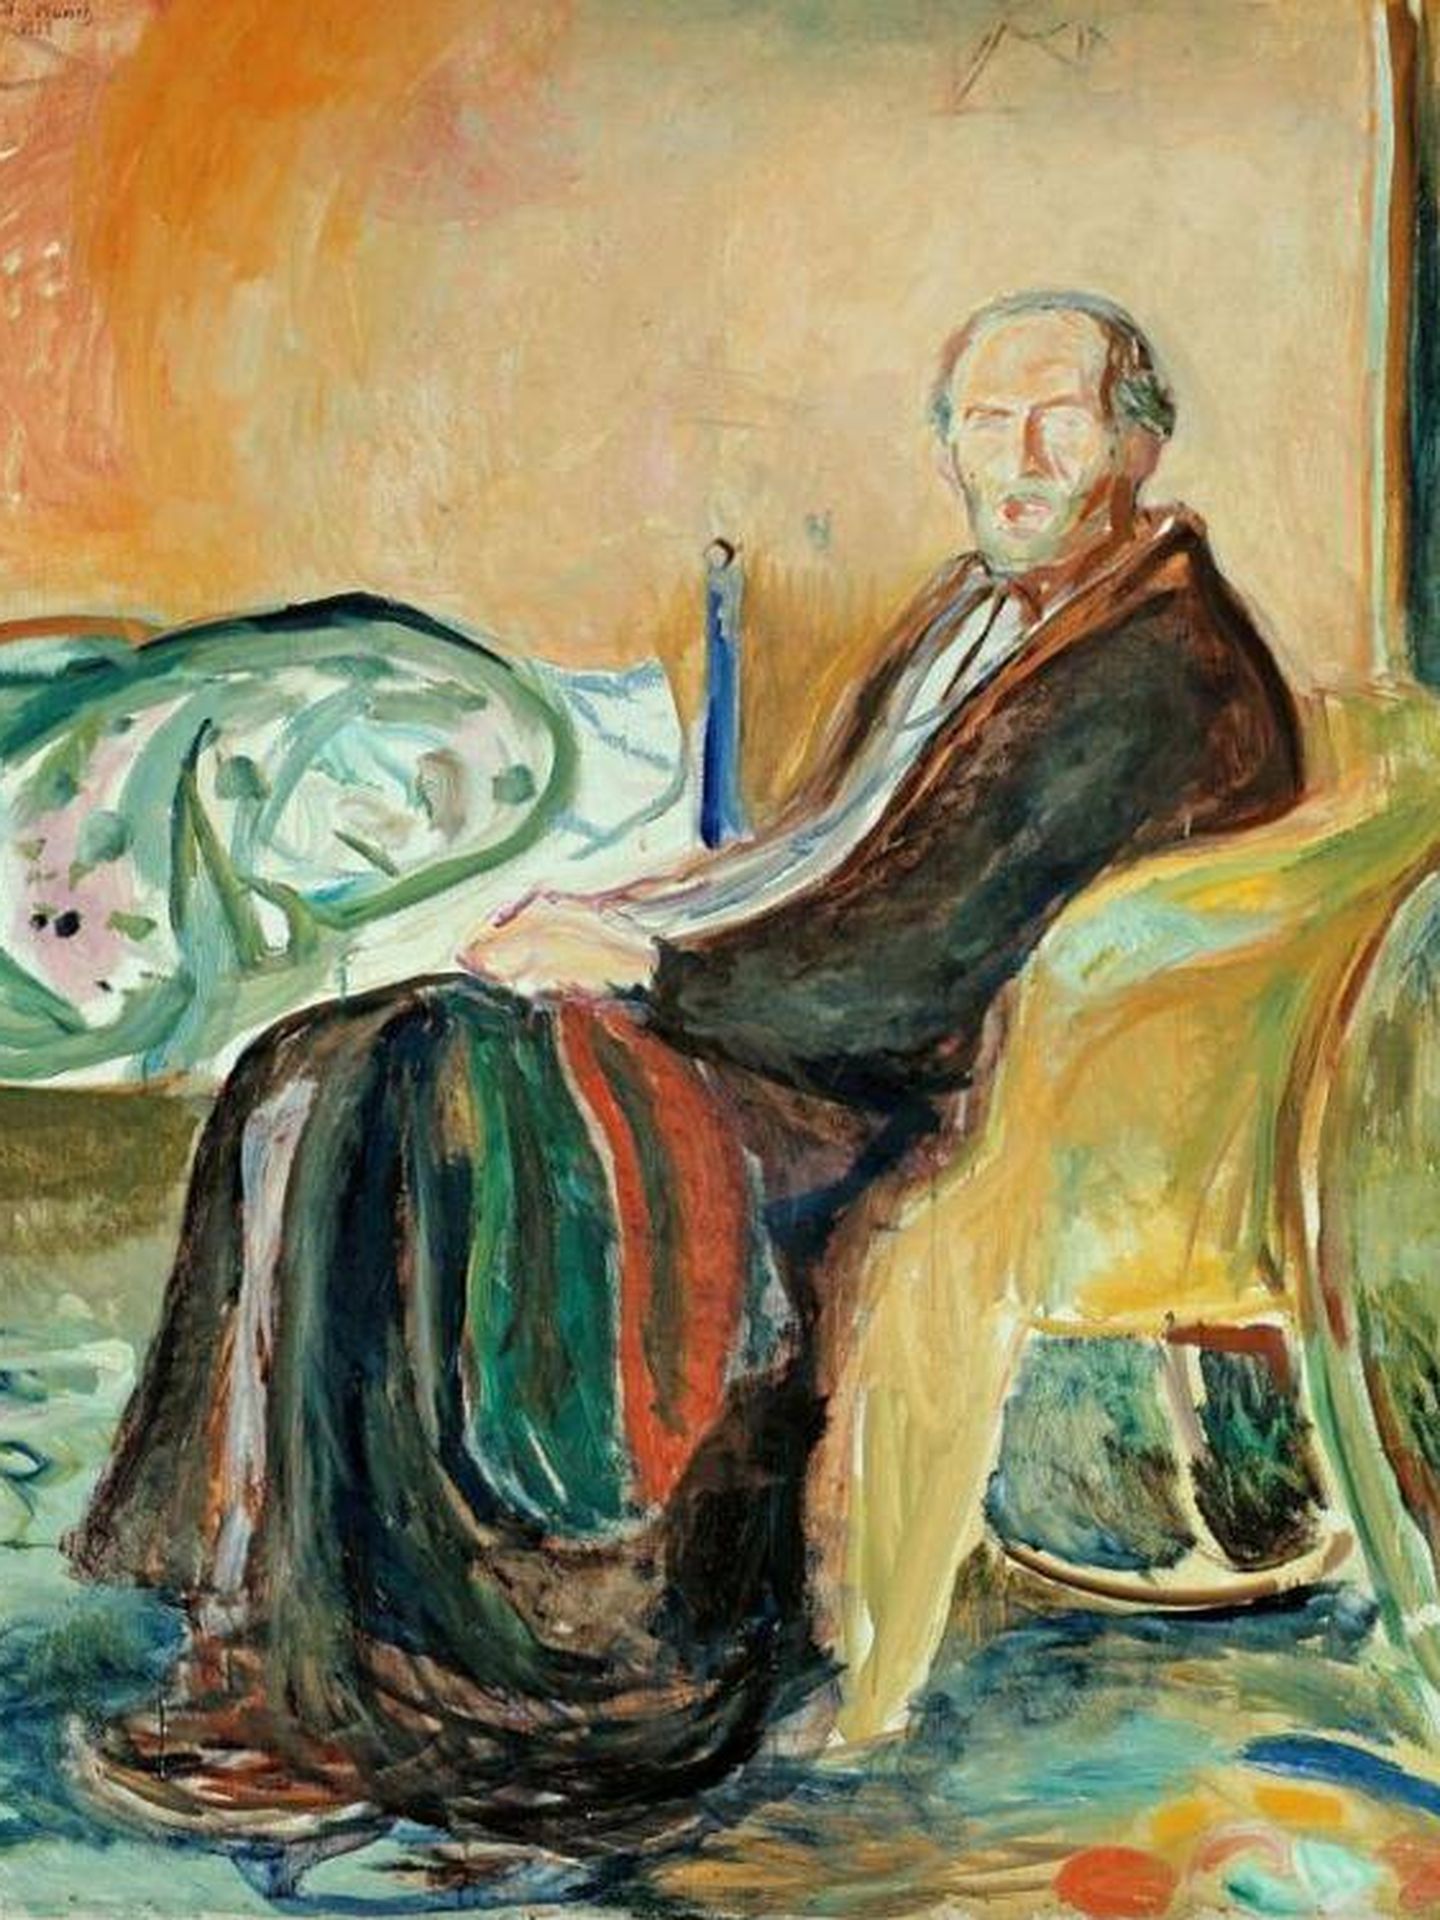 Autorretrato después de la gripe española, de Edvard Munch.